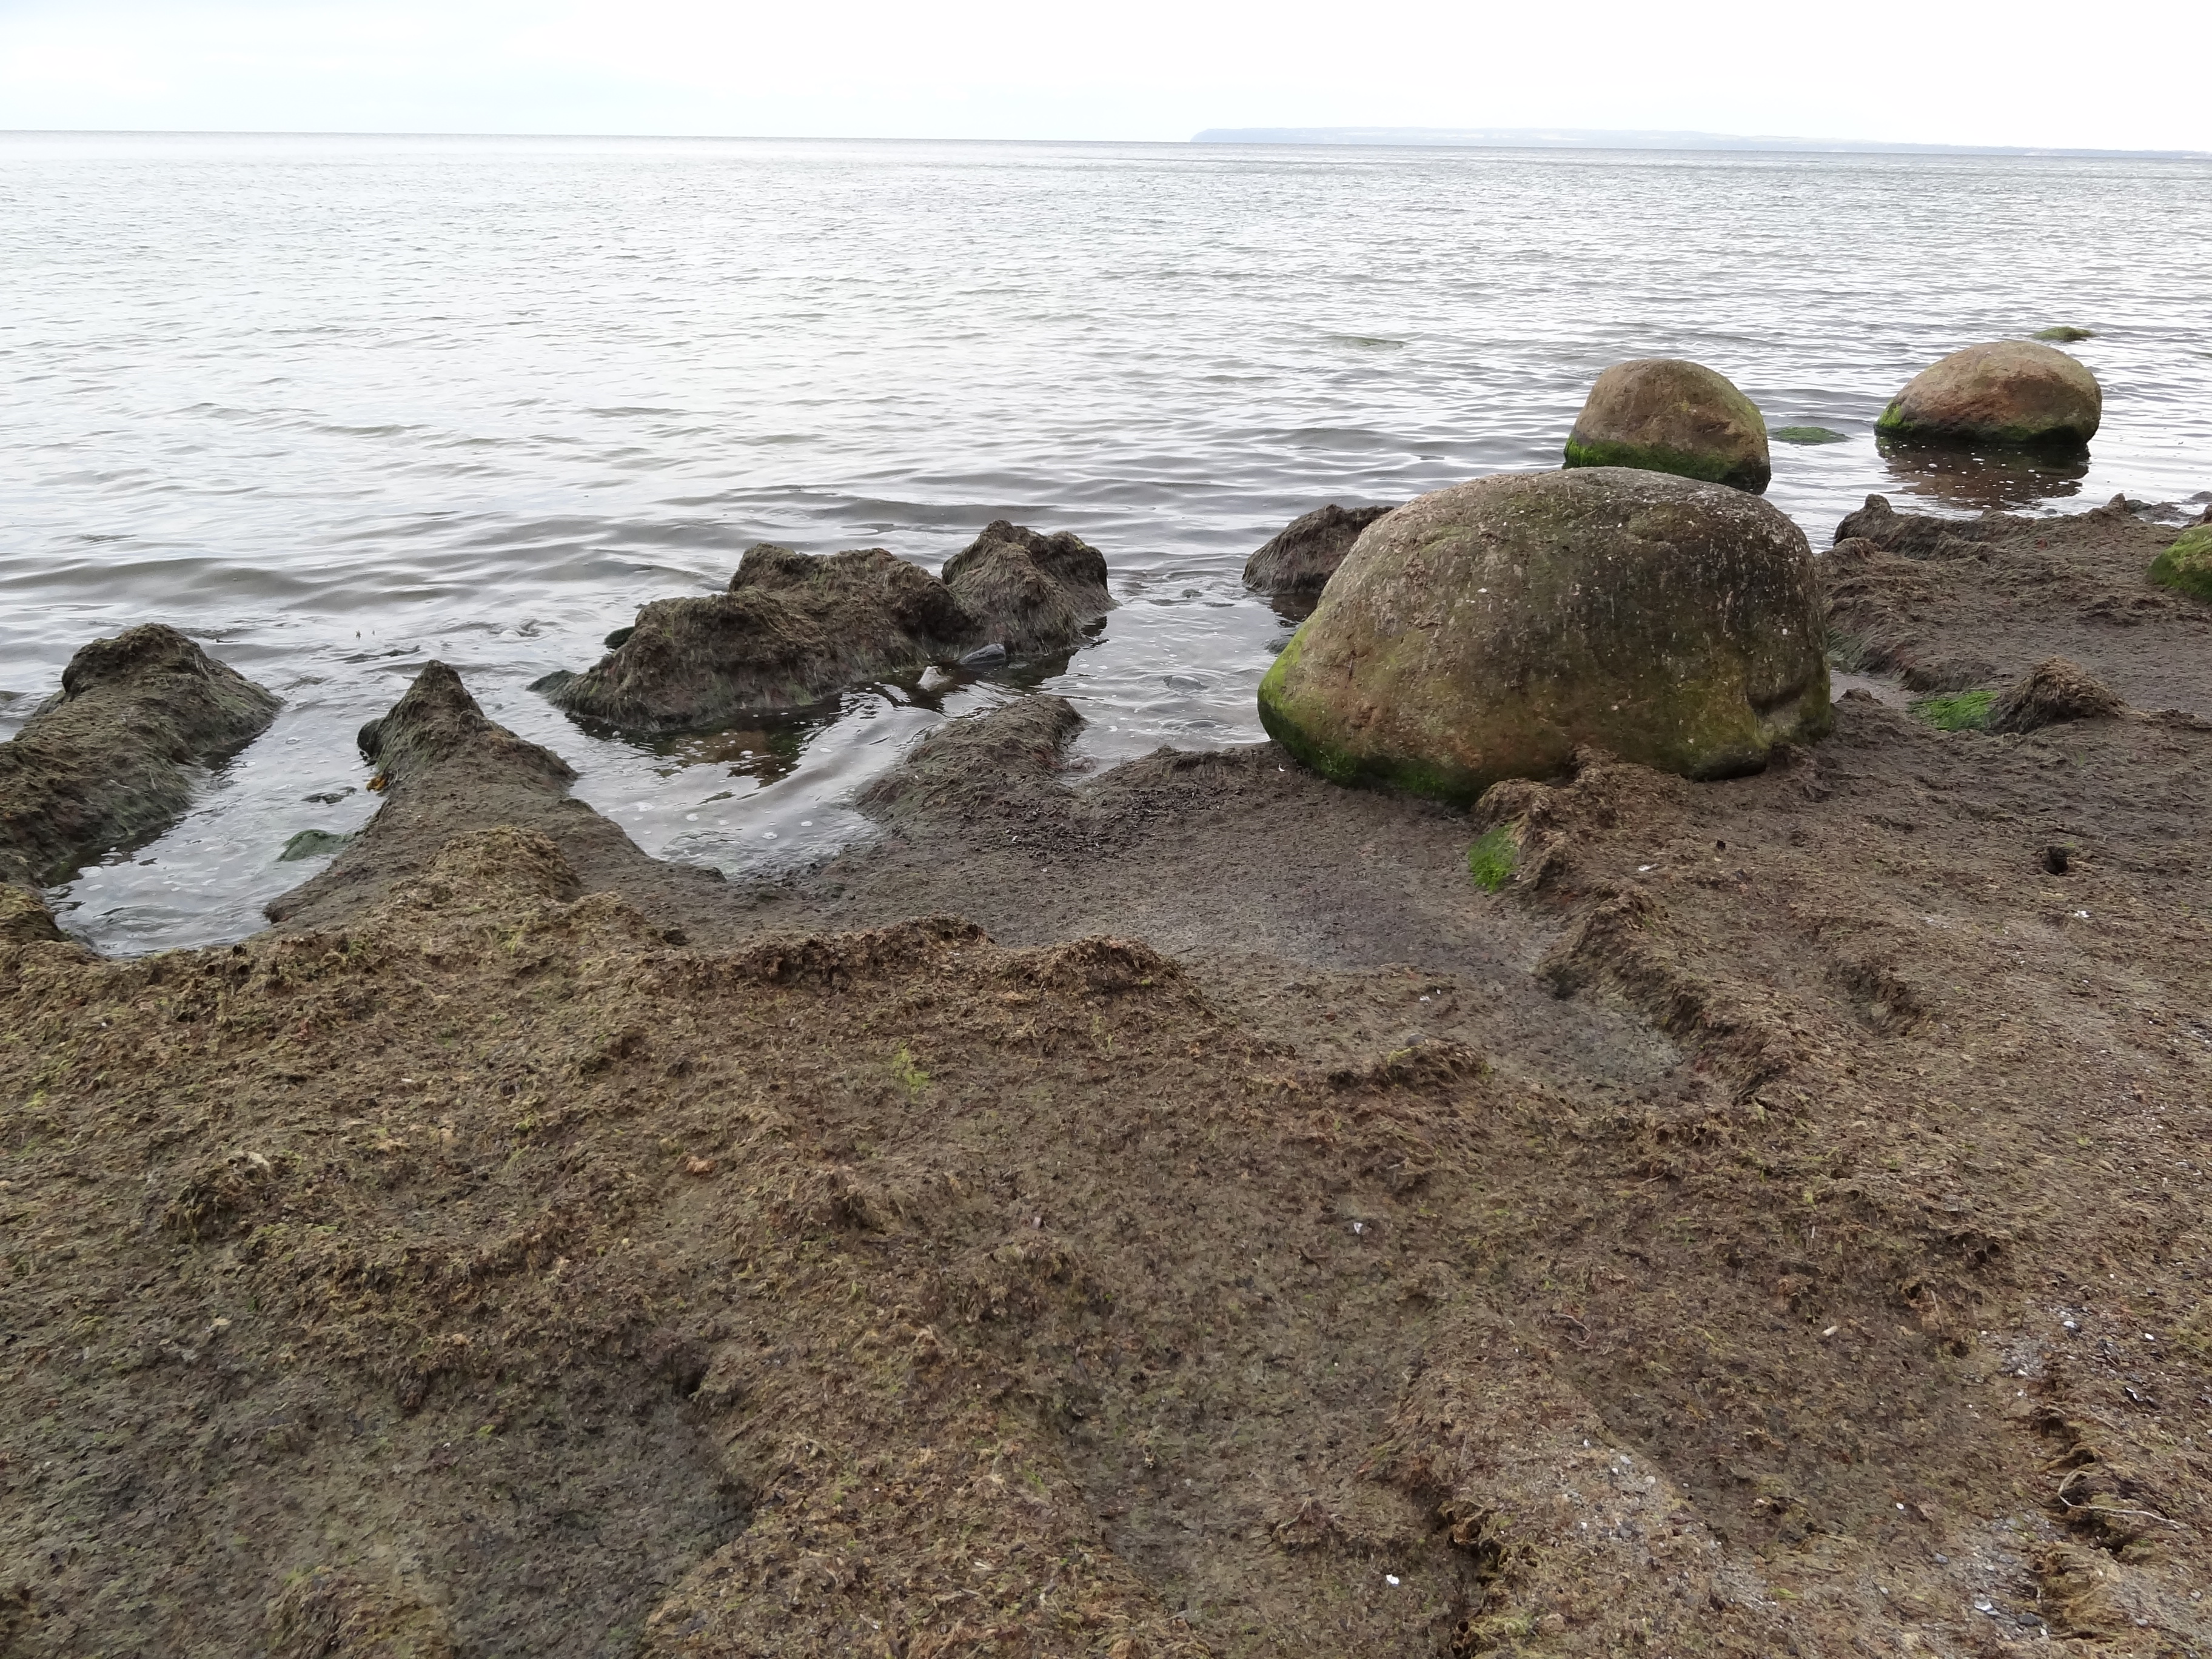 Am Strand von Kap Arkona eine große Fläche mit Algenmatten belegt